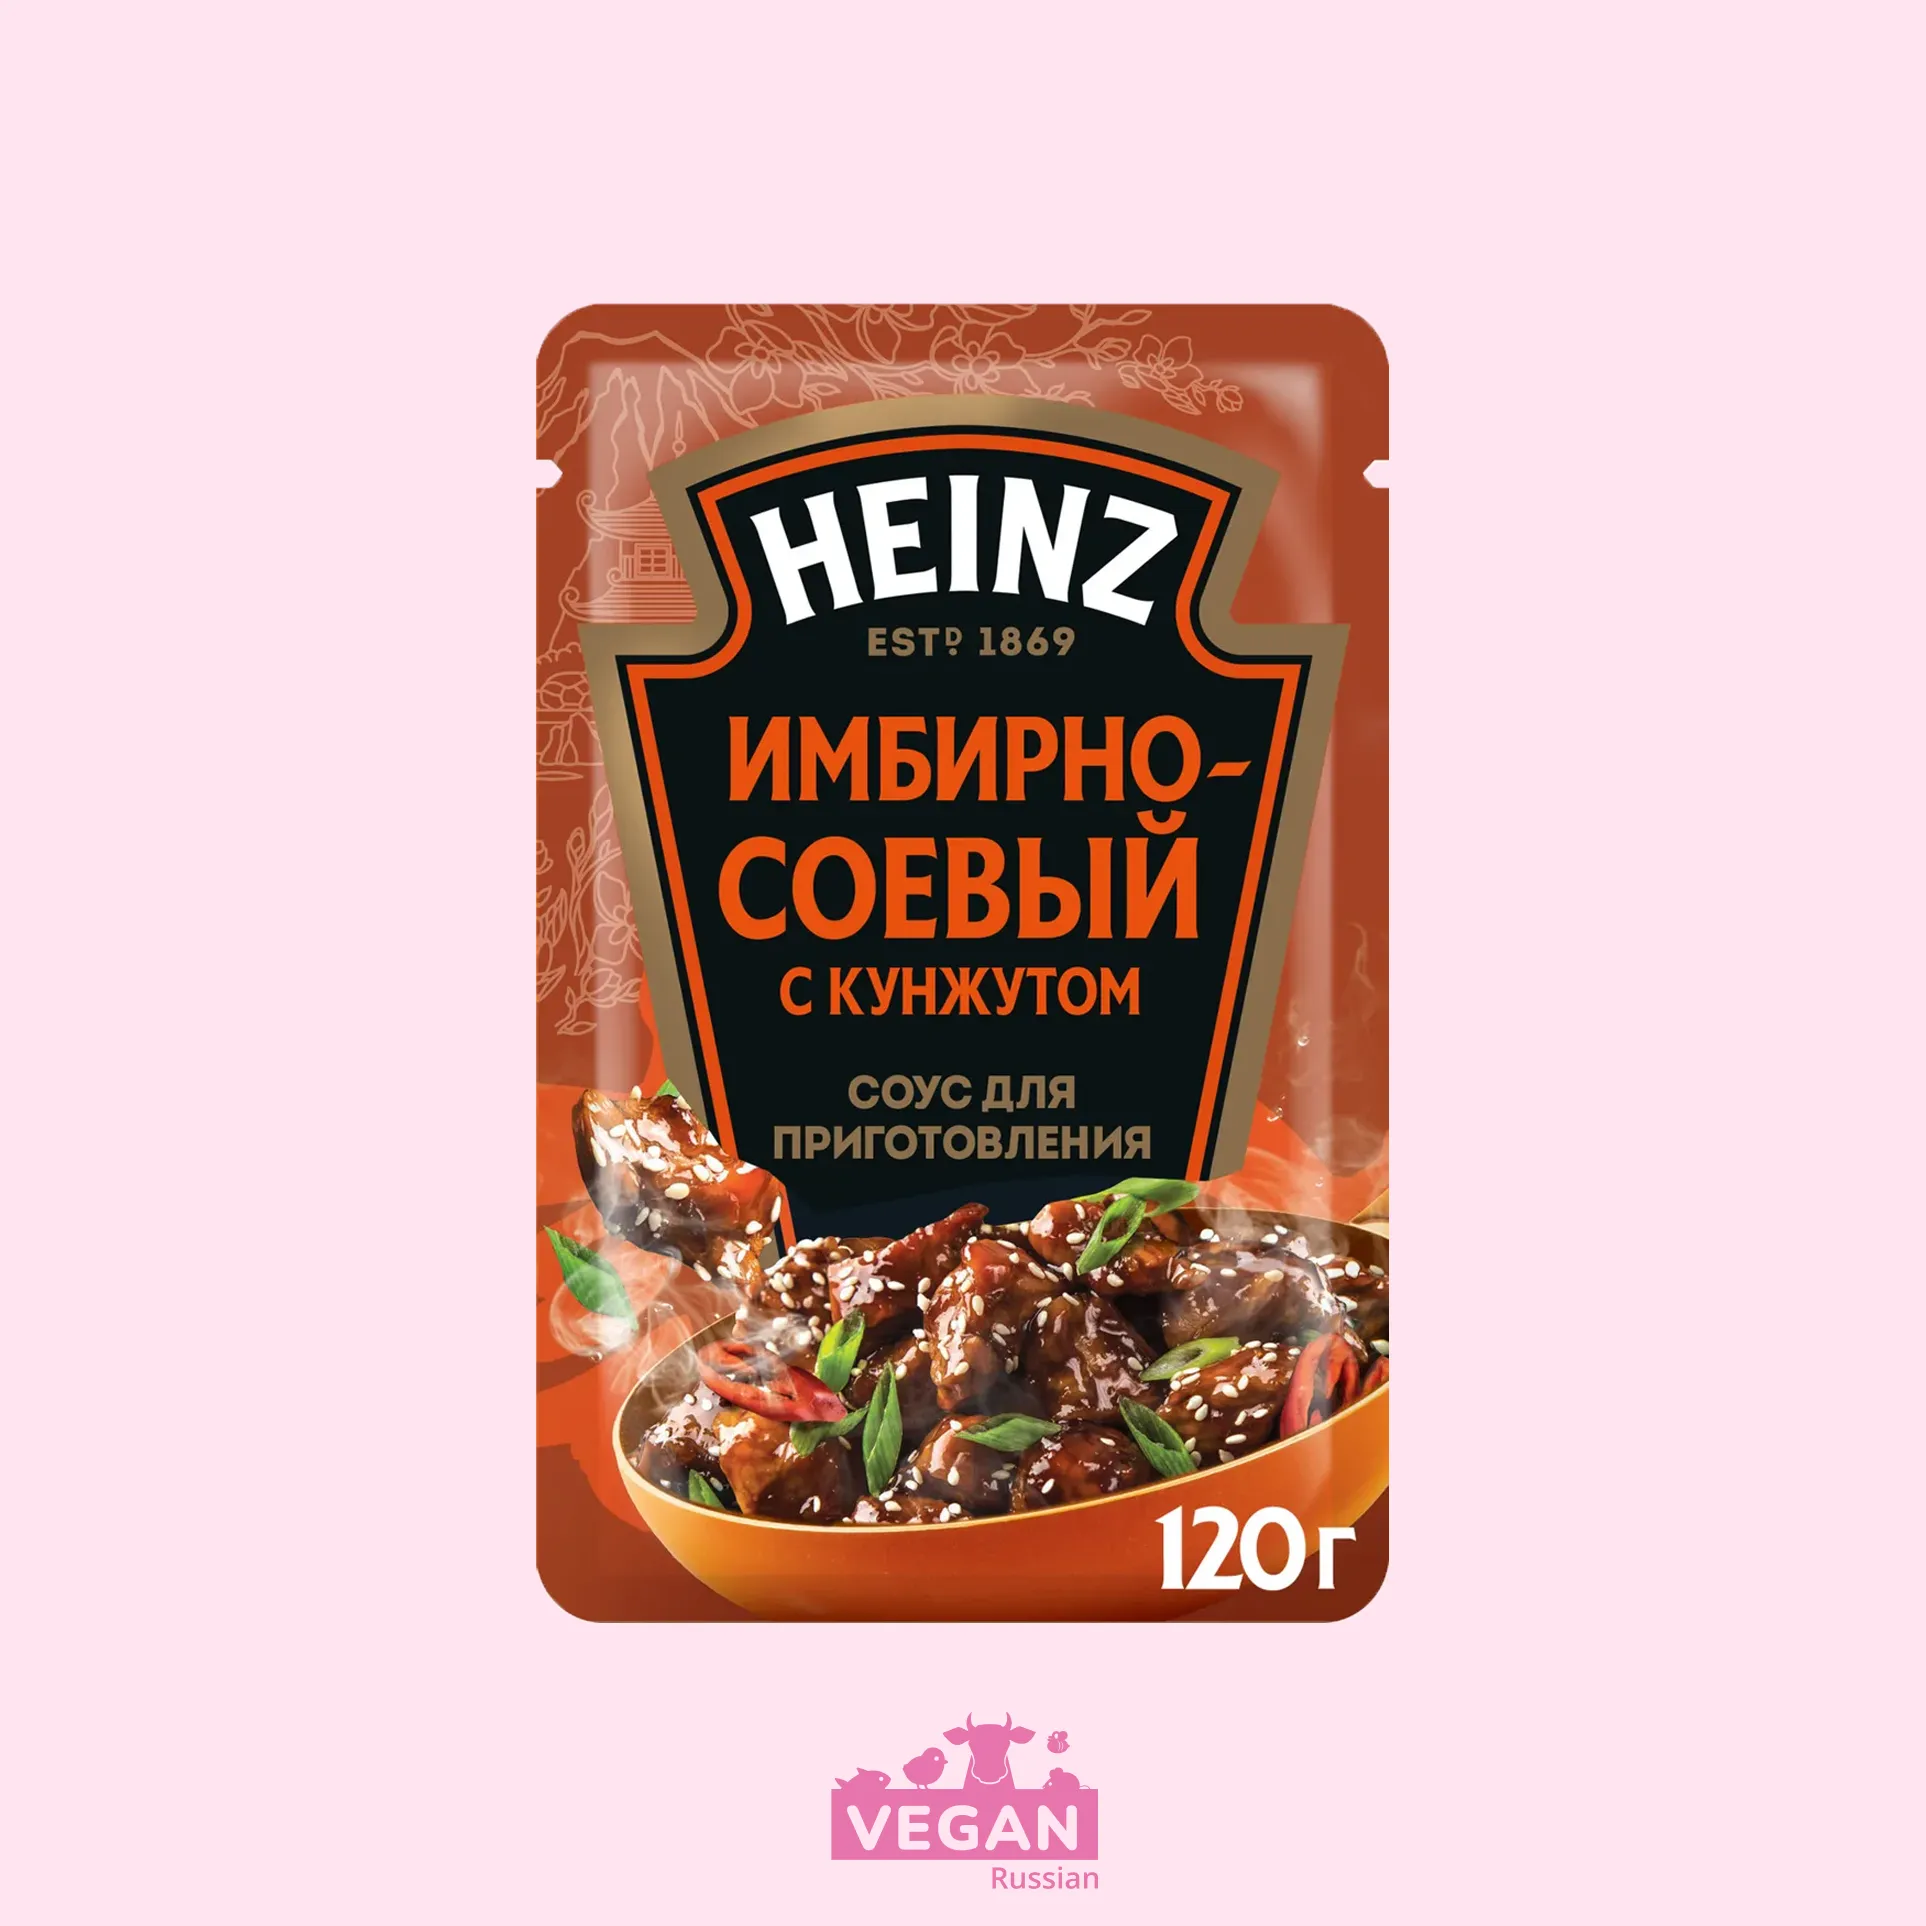 Соус c кунжутом для приготовления Имбирно-соевый Heinz 120 г